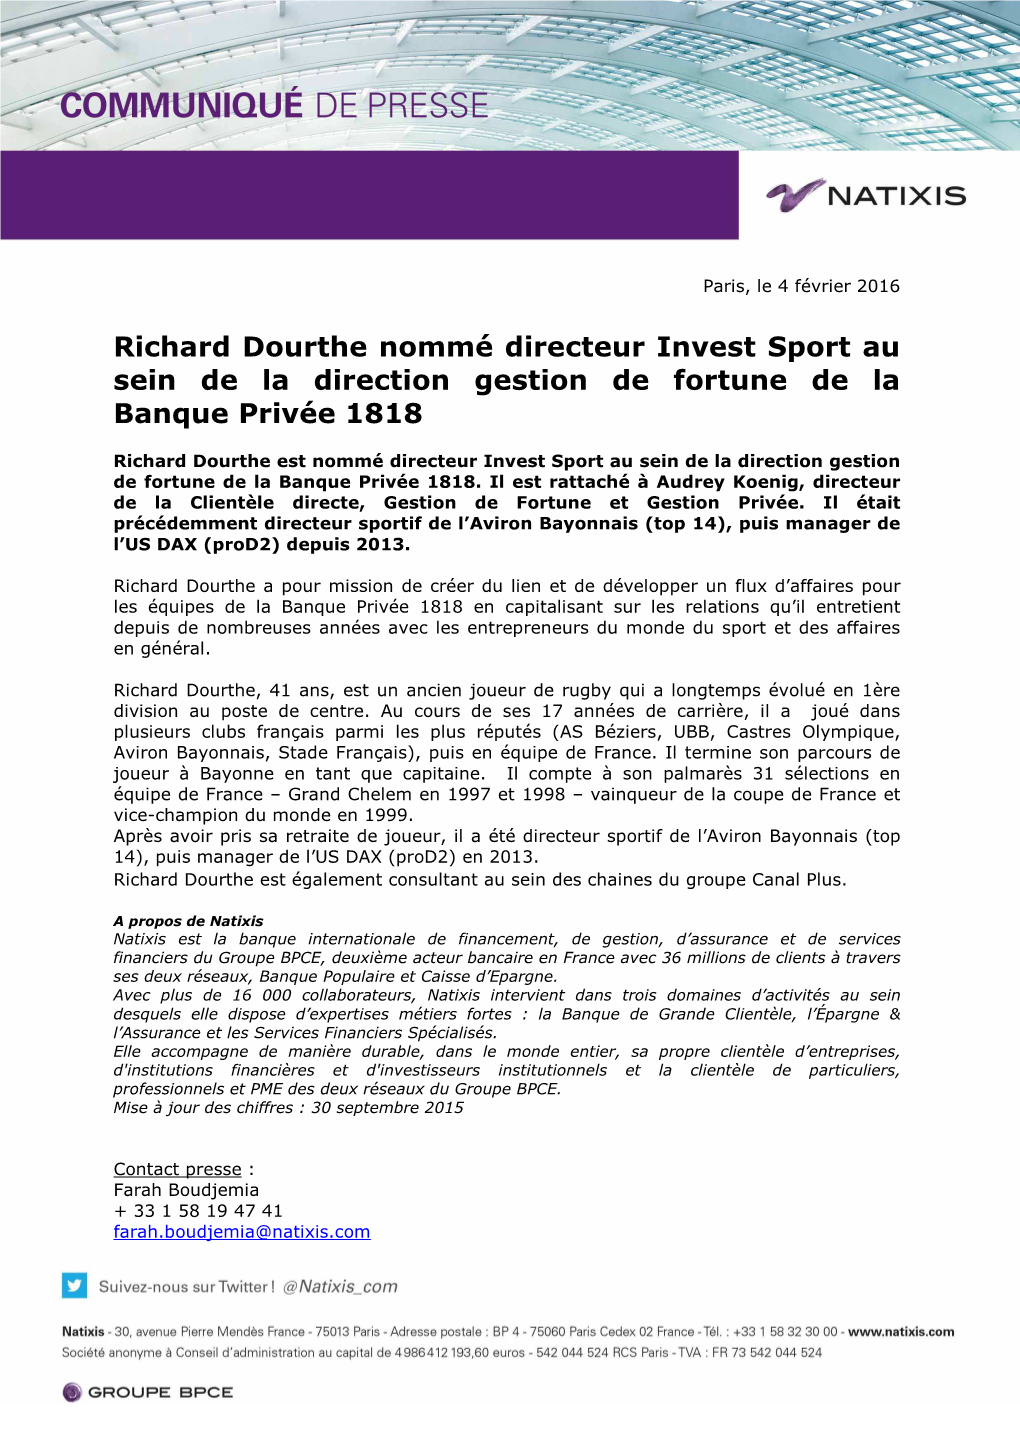 Natixis Communiqué De Presse Nomination Richard Dourthe